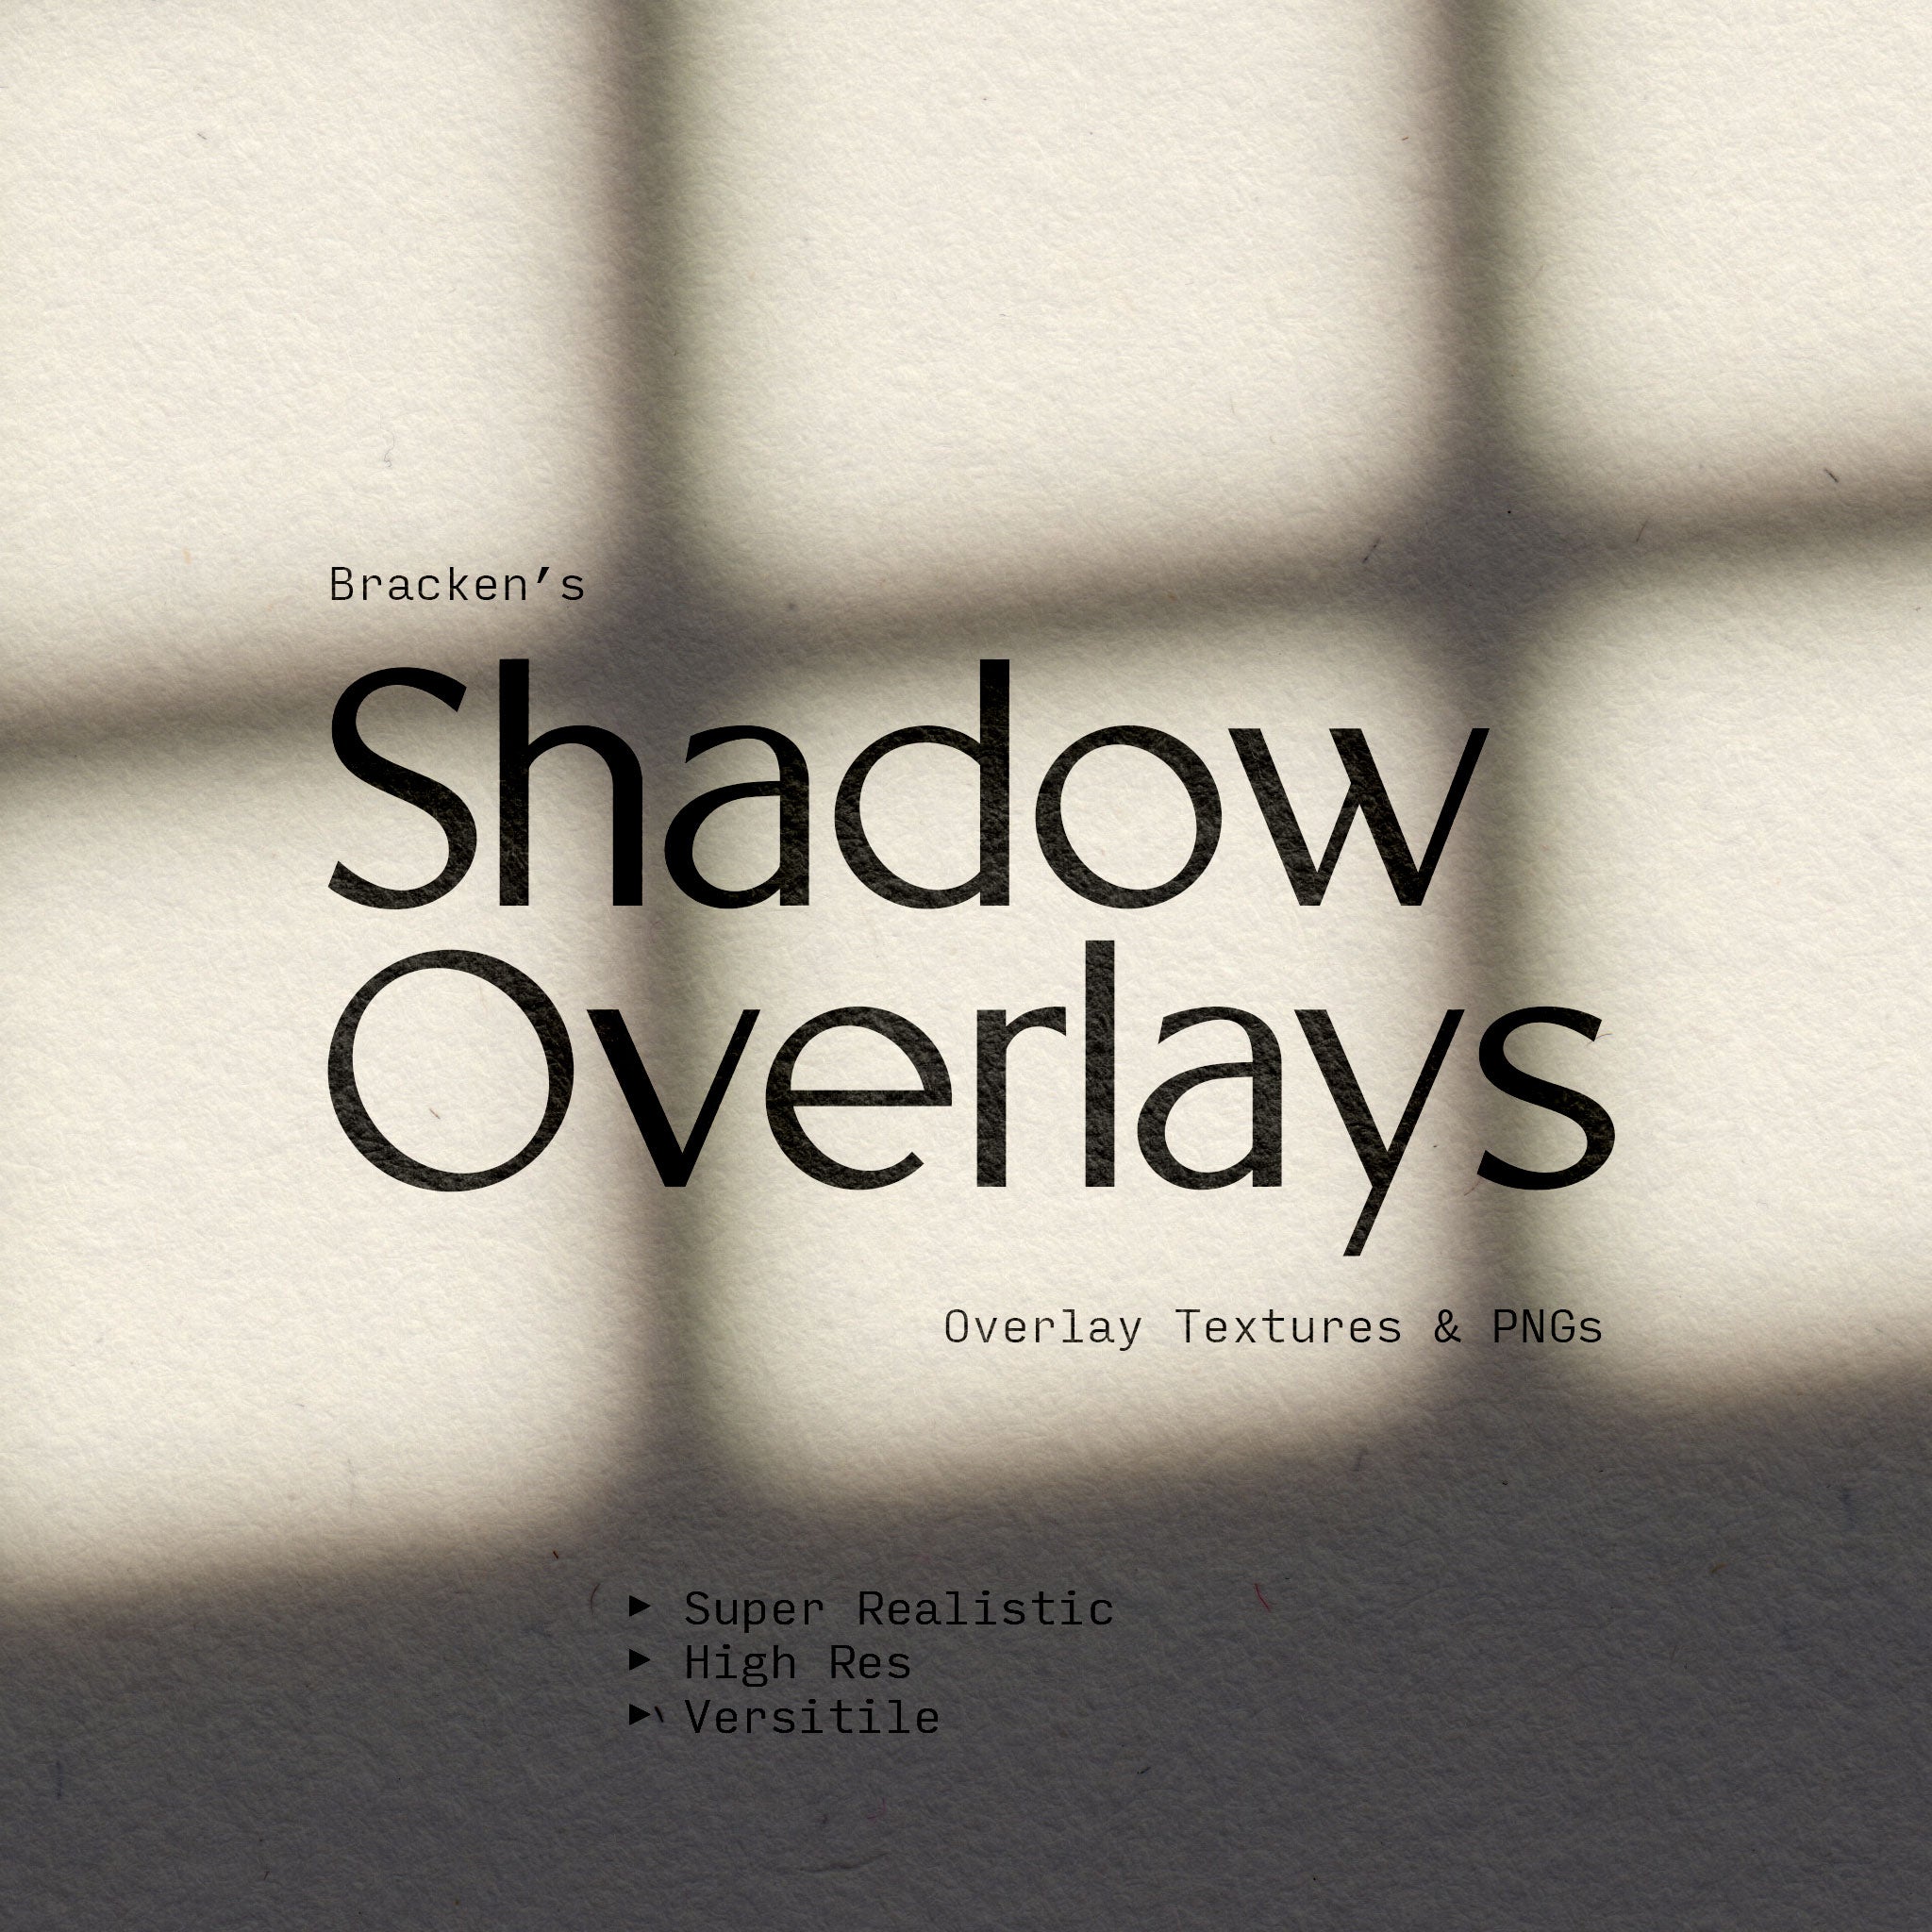 Shadow Overlays - Bracken